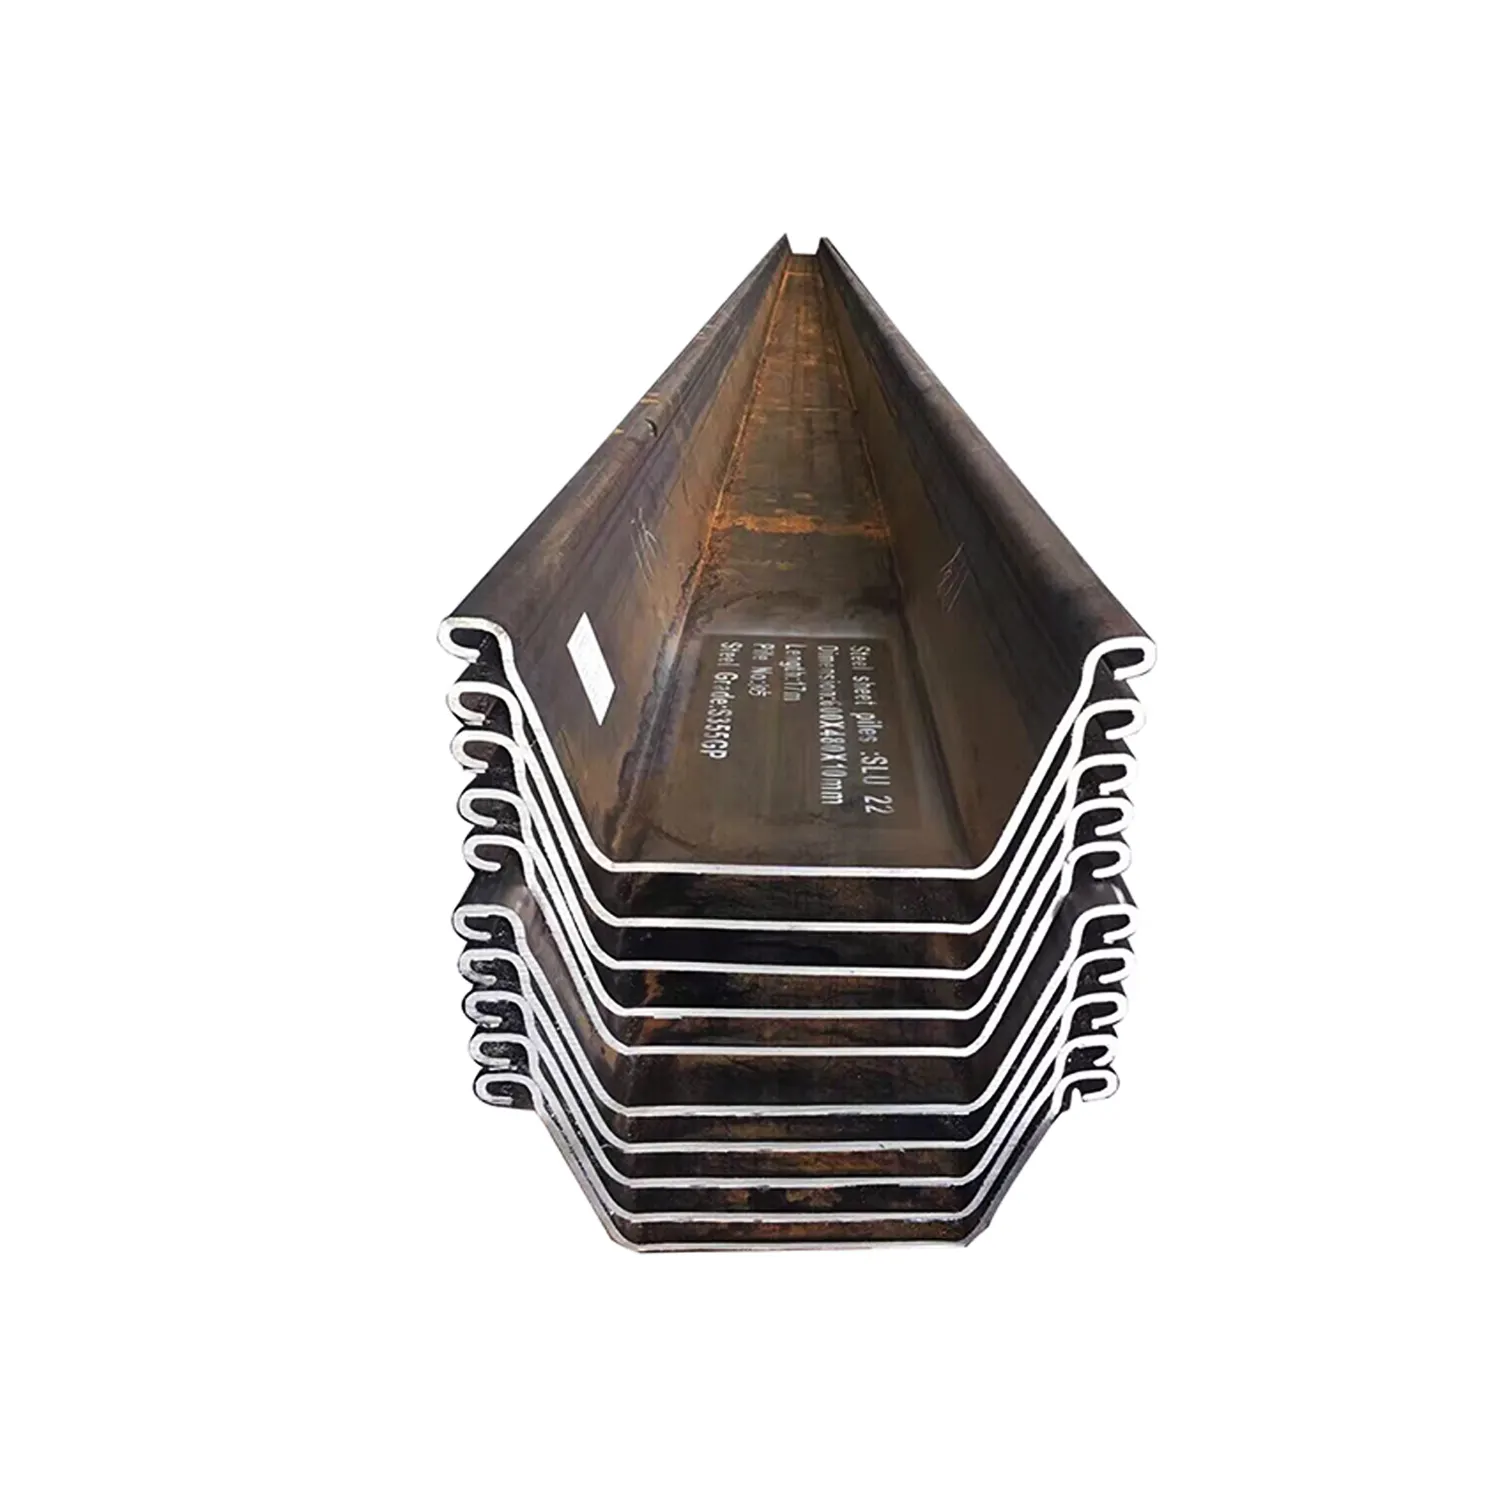 Pilas de chapa de acero laminado en caliente de canal de perfil U Z Tipo 2 tipo 3 hoja de acero pila de chapa de acero